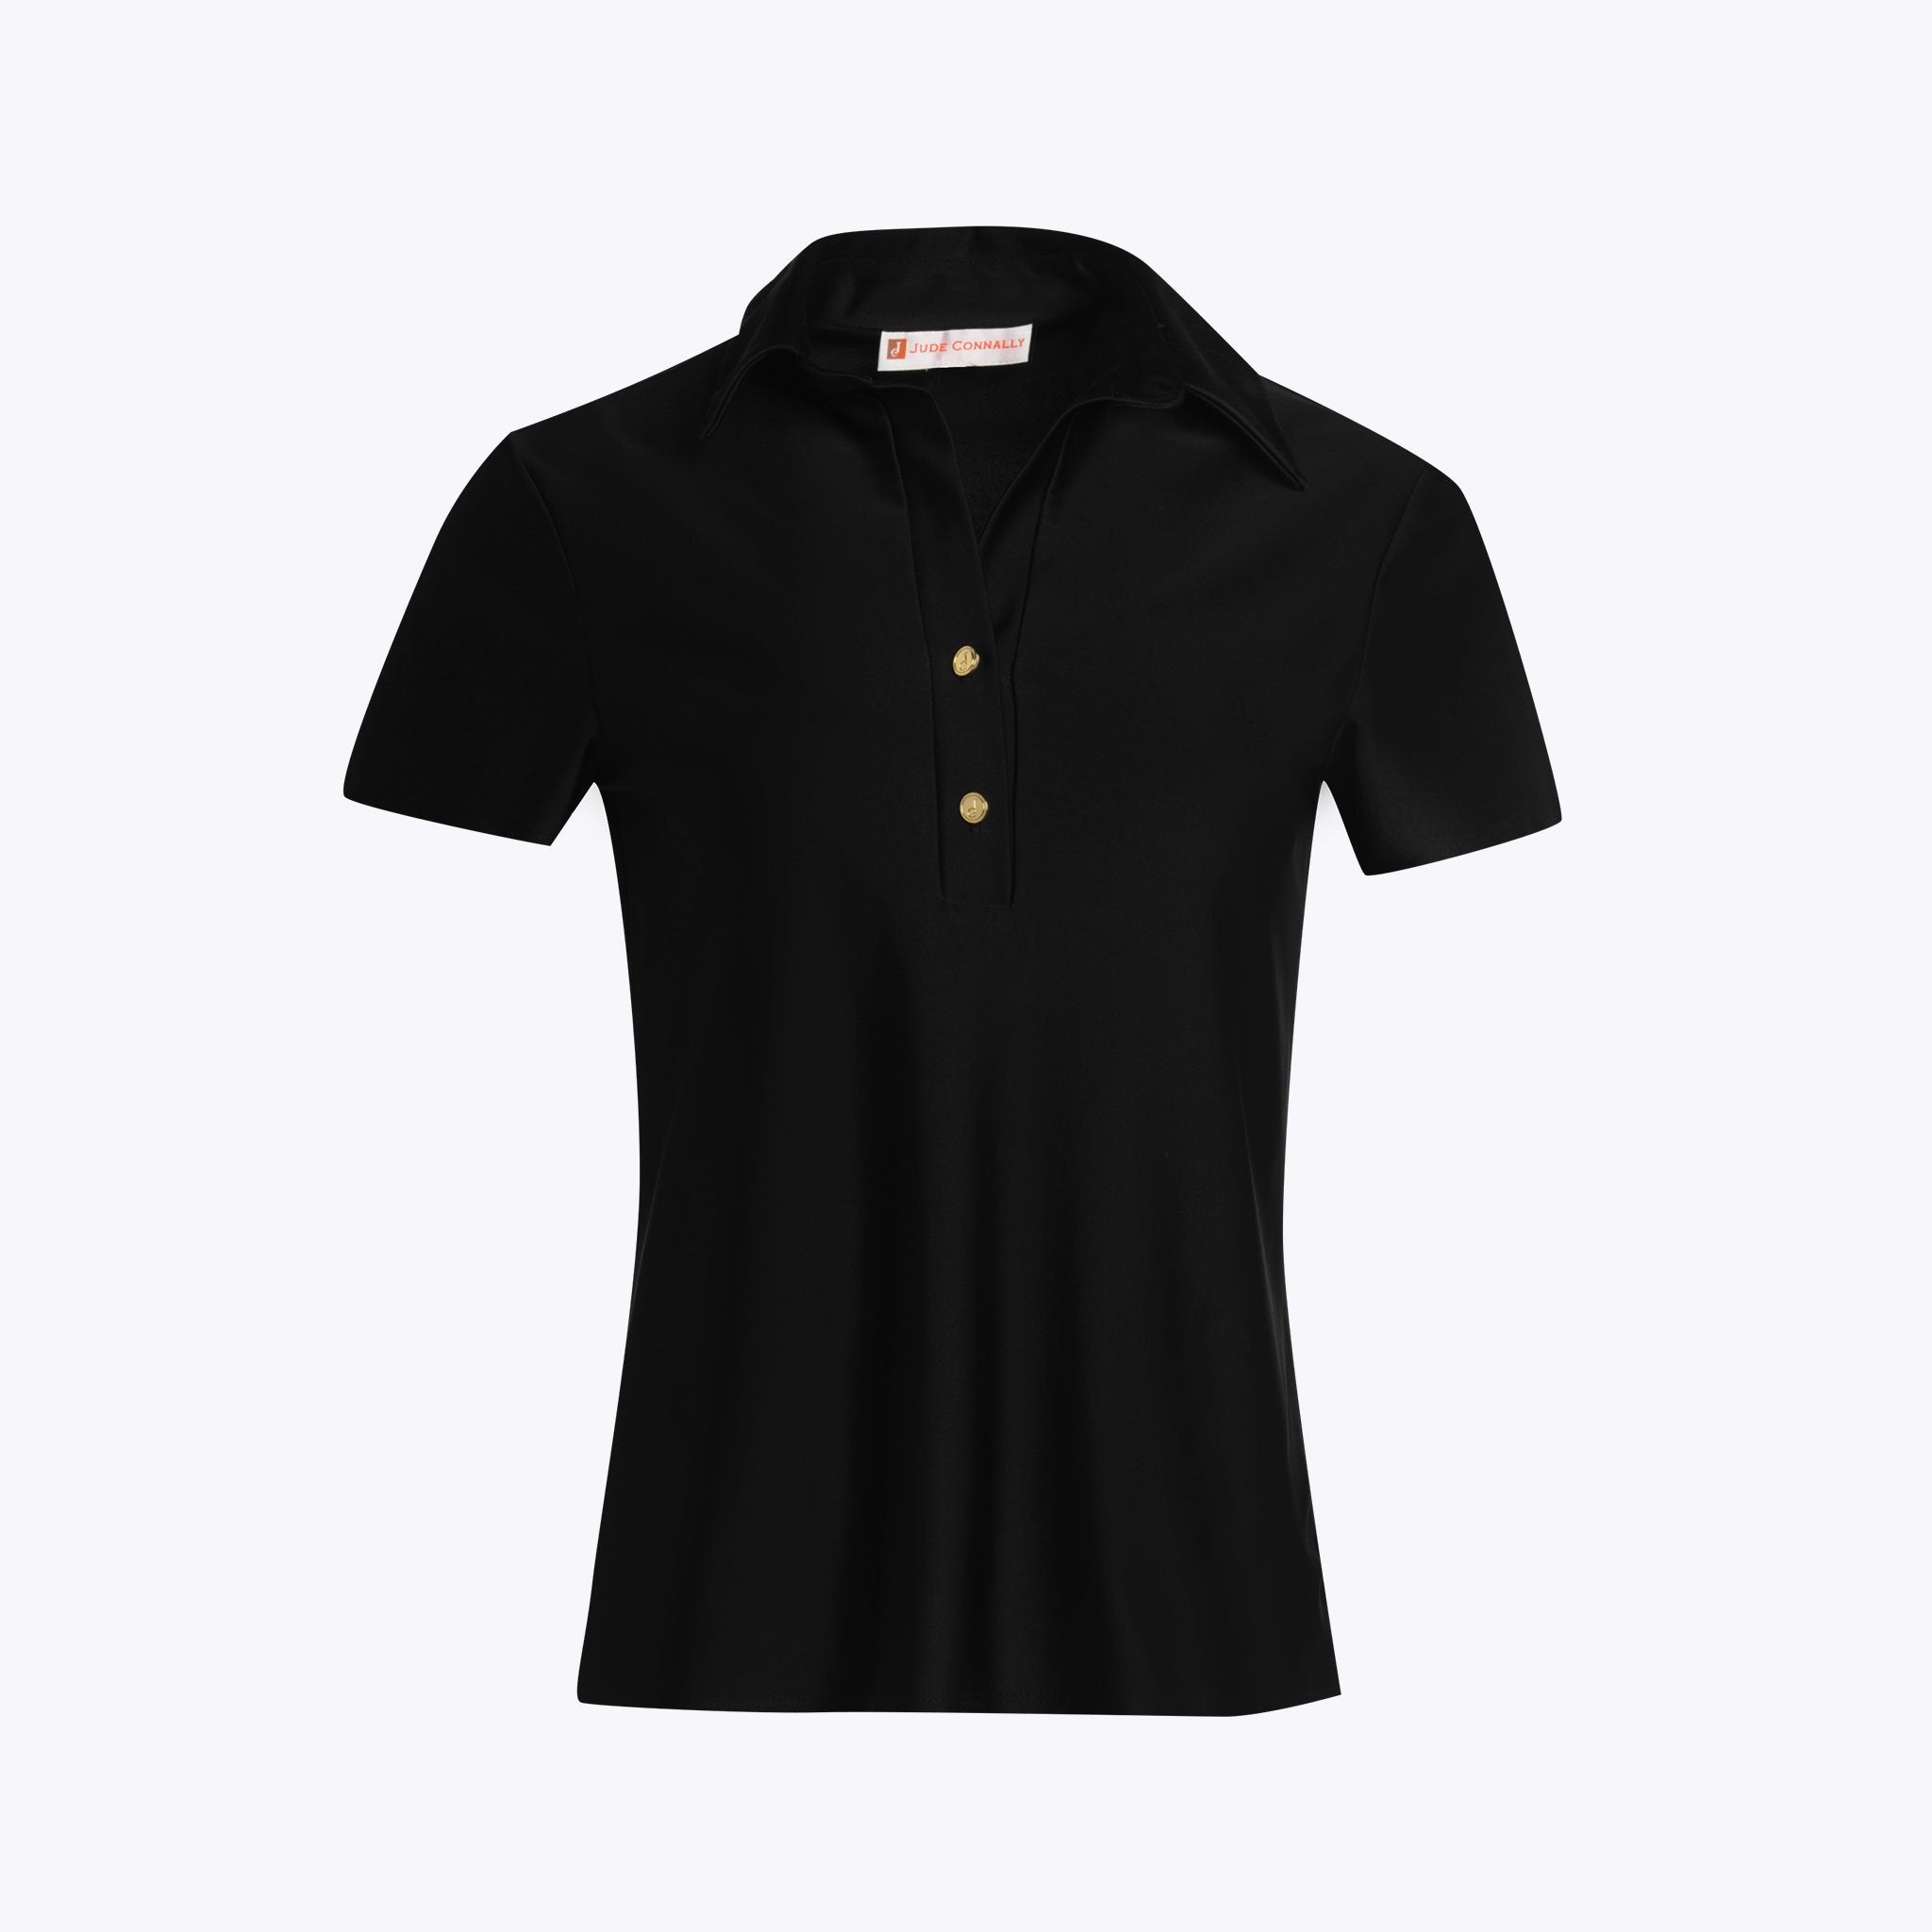 Sydney Shirt - Lightweight Jude Cloth